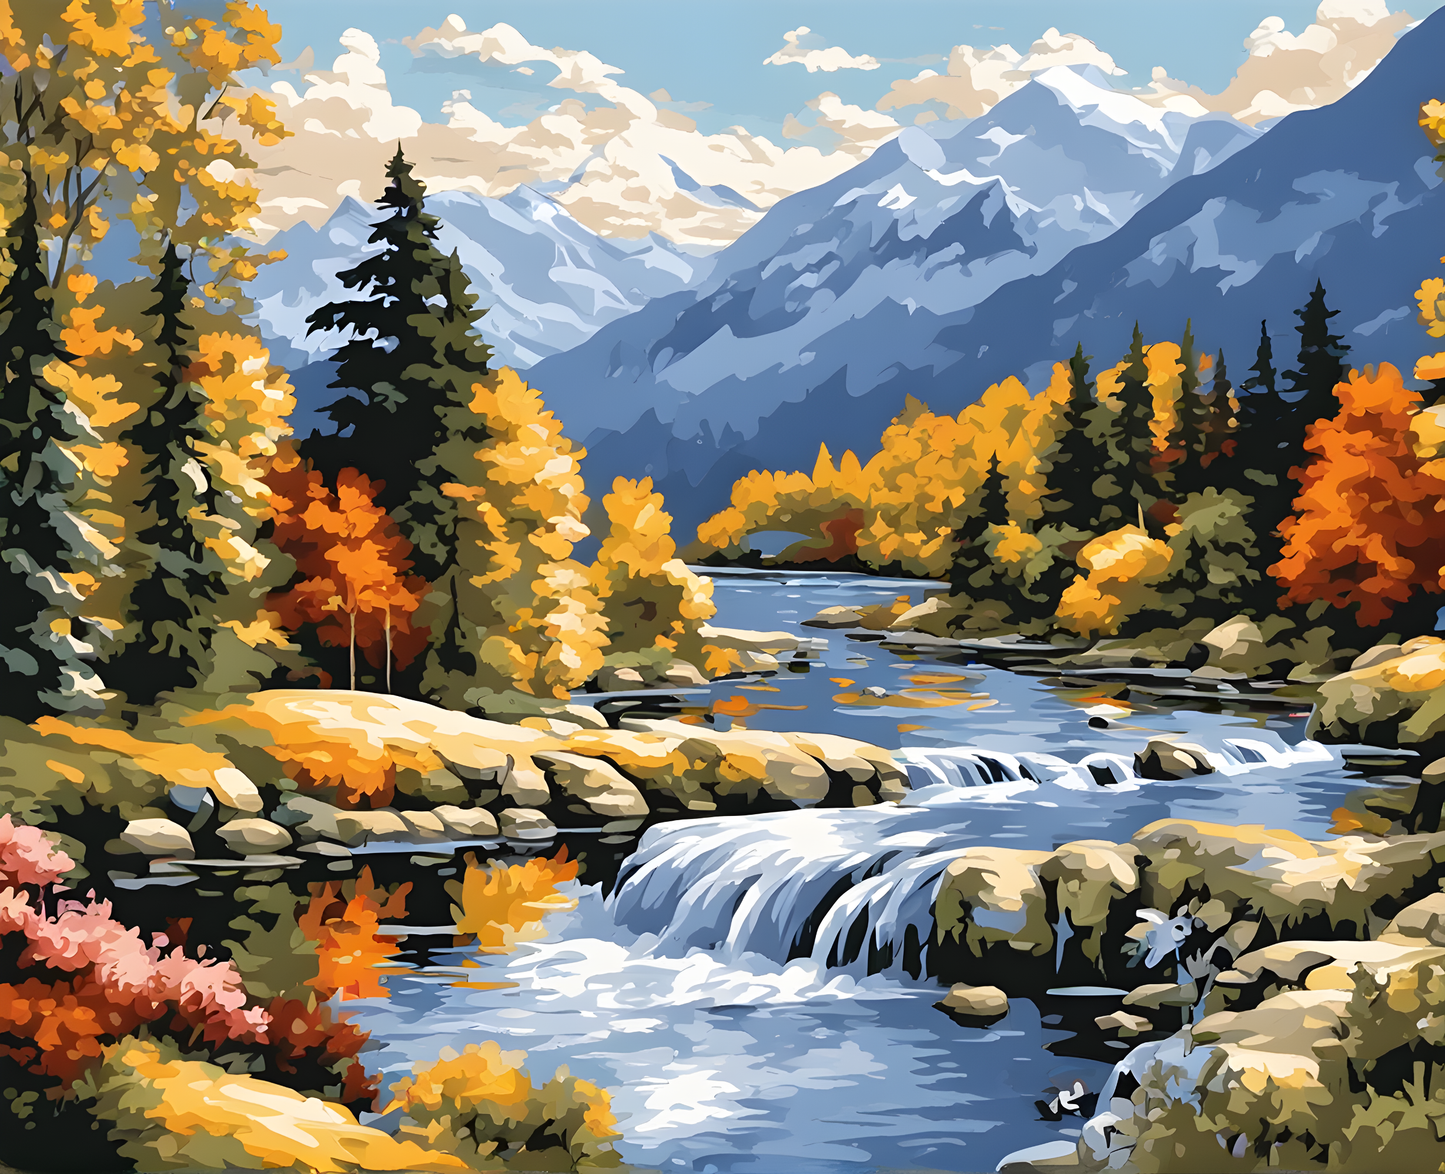 River landscape (2) - Van-Go Paint-By-Number Kit